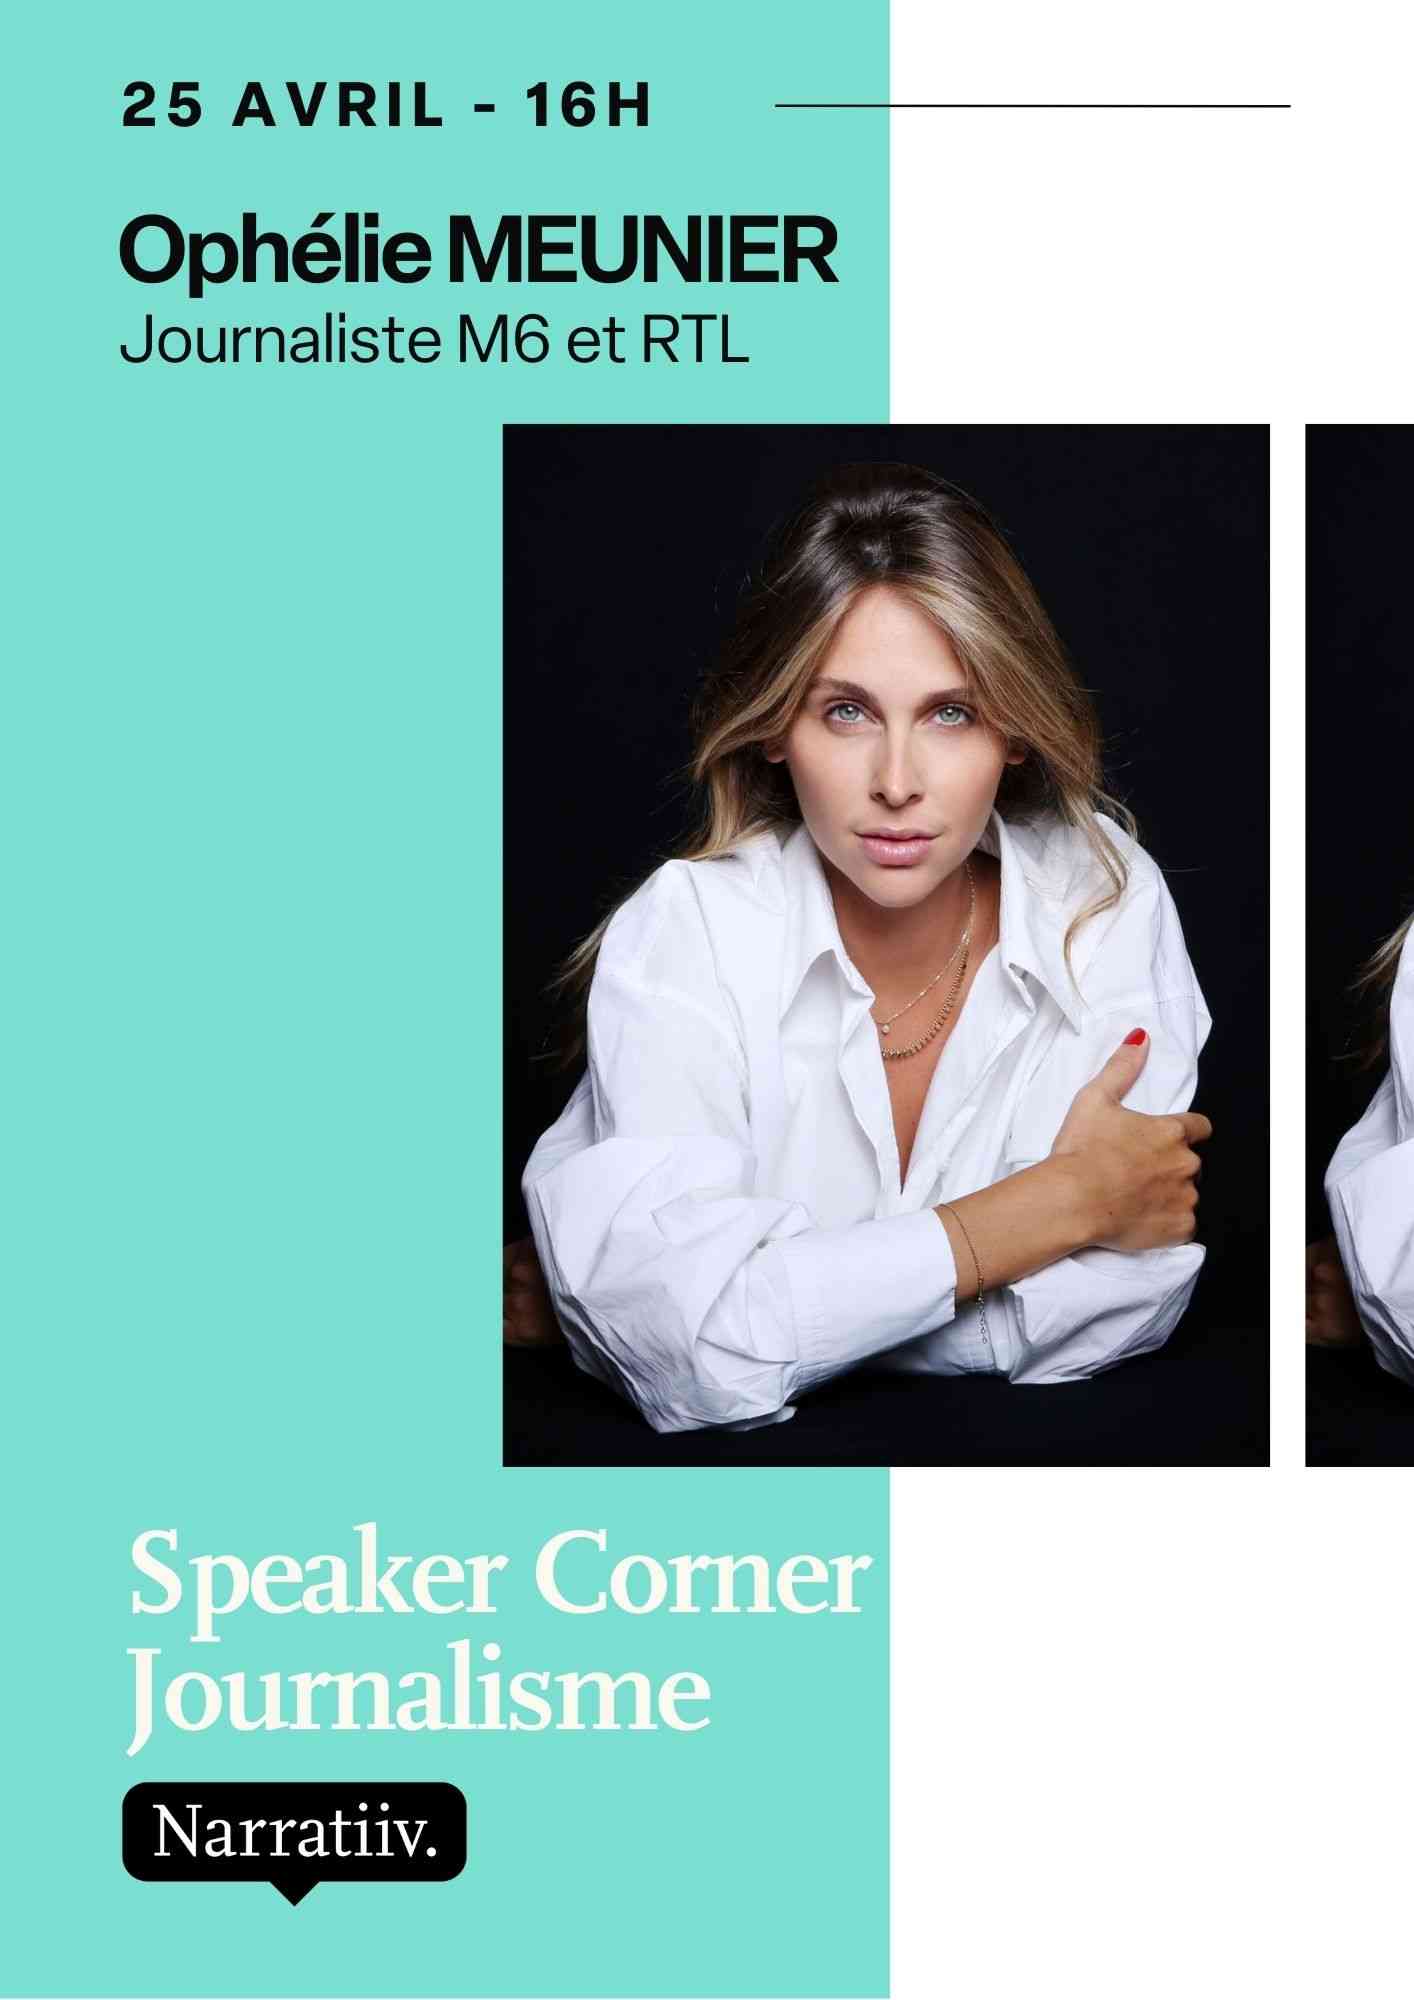 Speaker Corner Ophélie Meunier